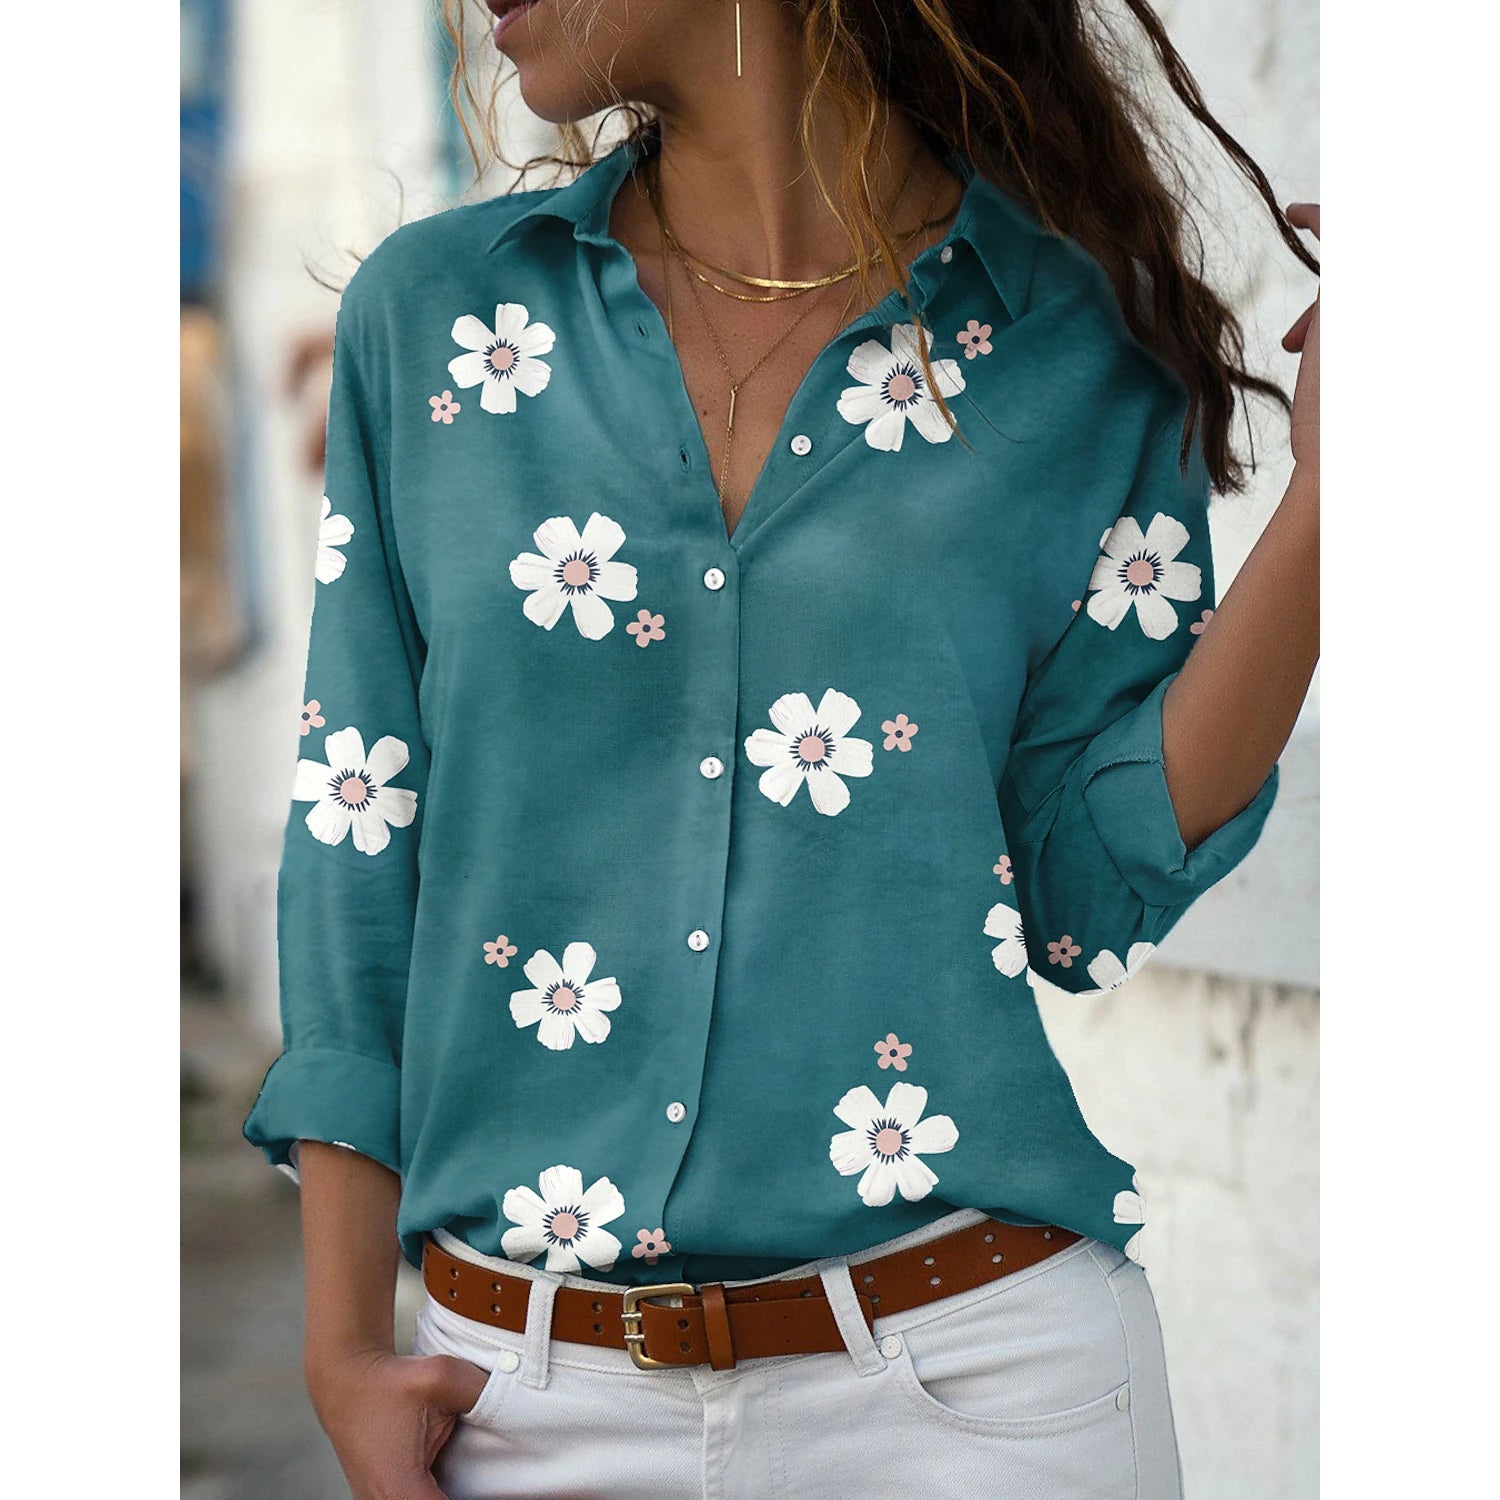 US$ 22.00 - Women's Floral Button Themed Shirt Top - www.zicopop.com